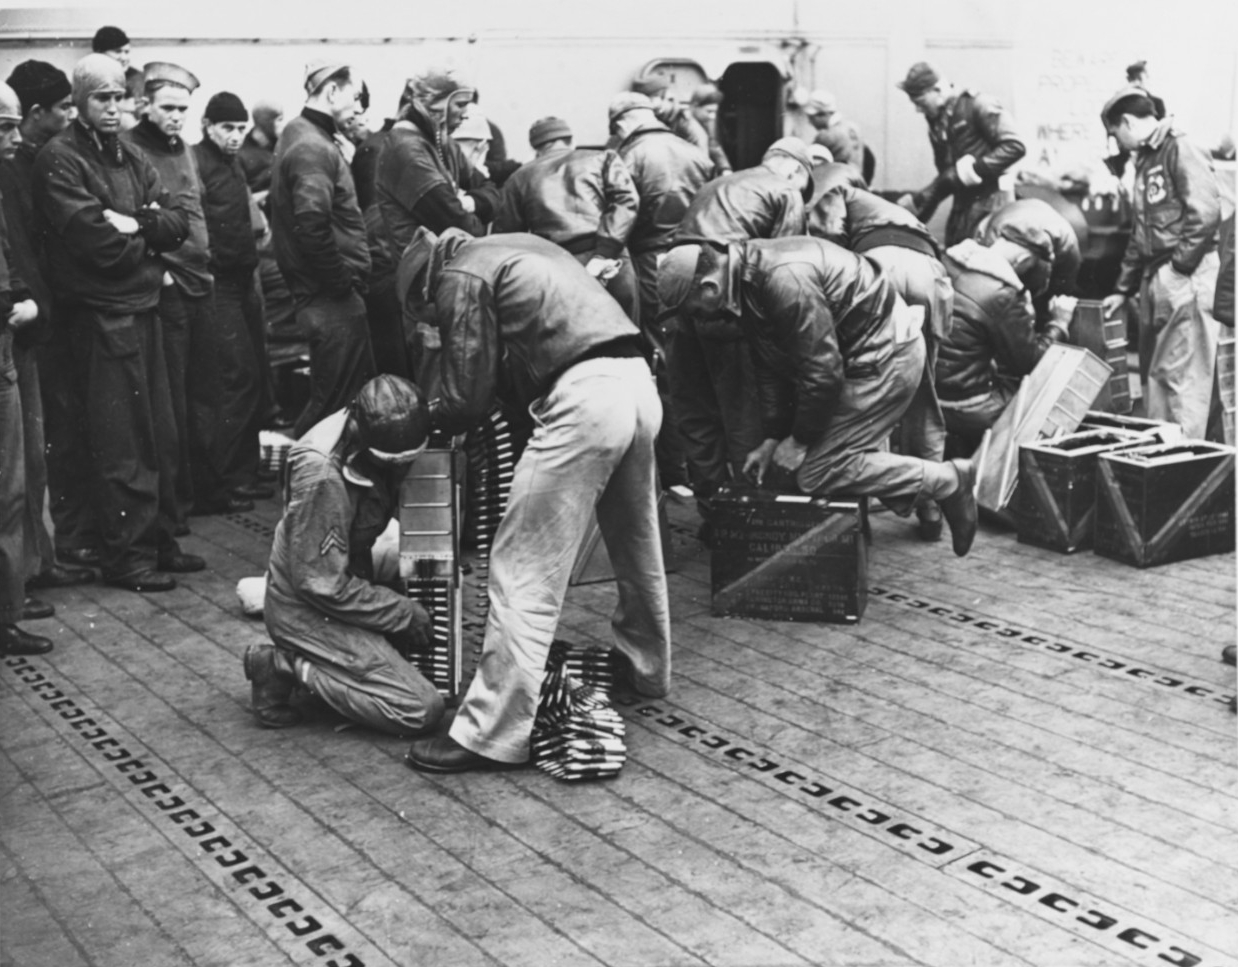 Photo #: NH 53424 Doolittle Raid on Japan, 18 April 1942